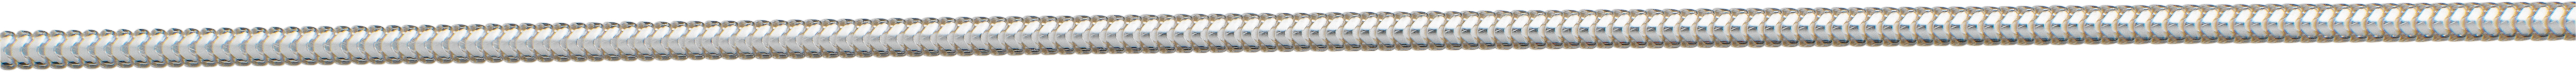 slangenketting zilver 925/- Ø 1,60mm